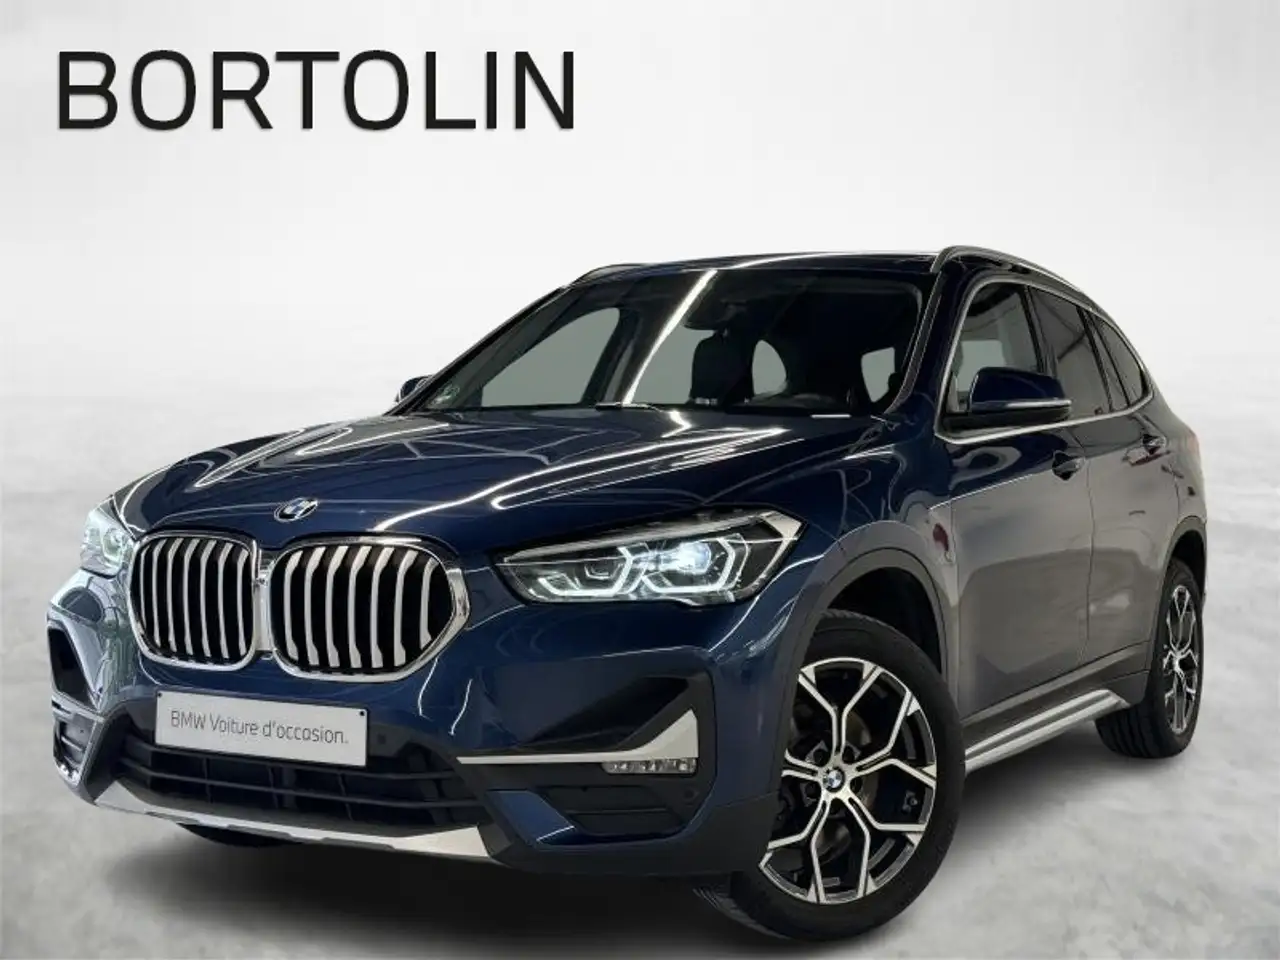 BMW X1 SUV/4x4/Pick-up in Blauw tweedehands in Huy-Tihange voor € 26.900,-